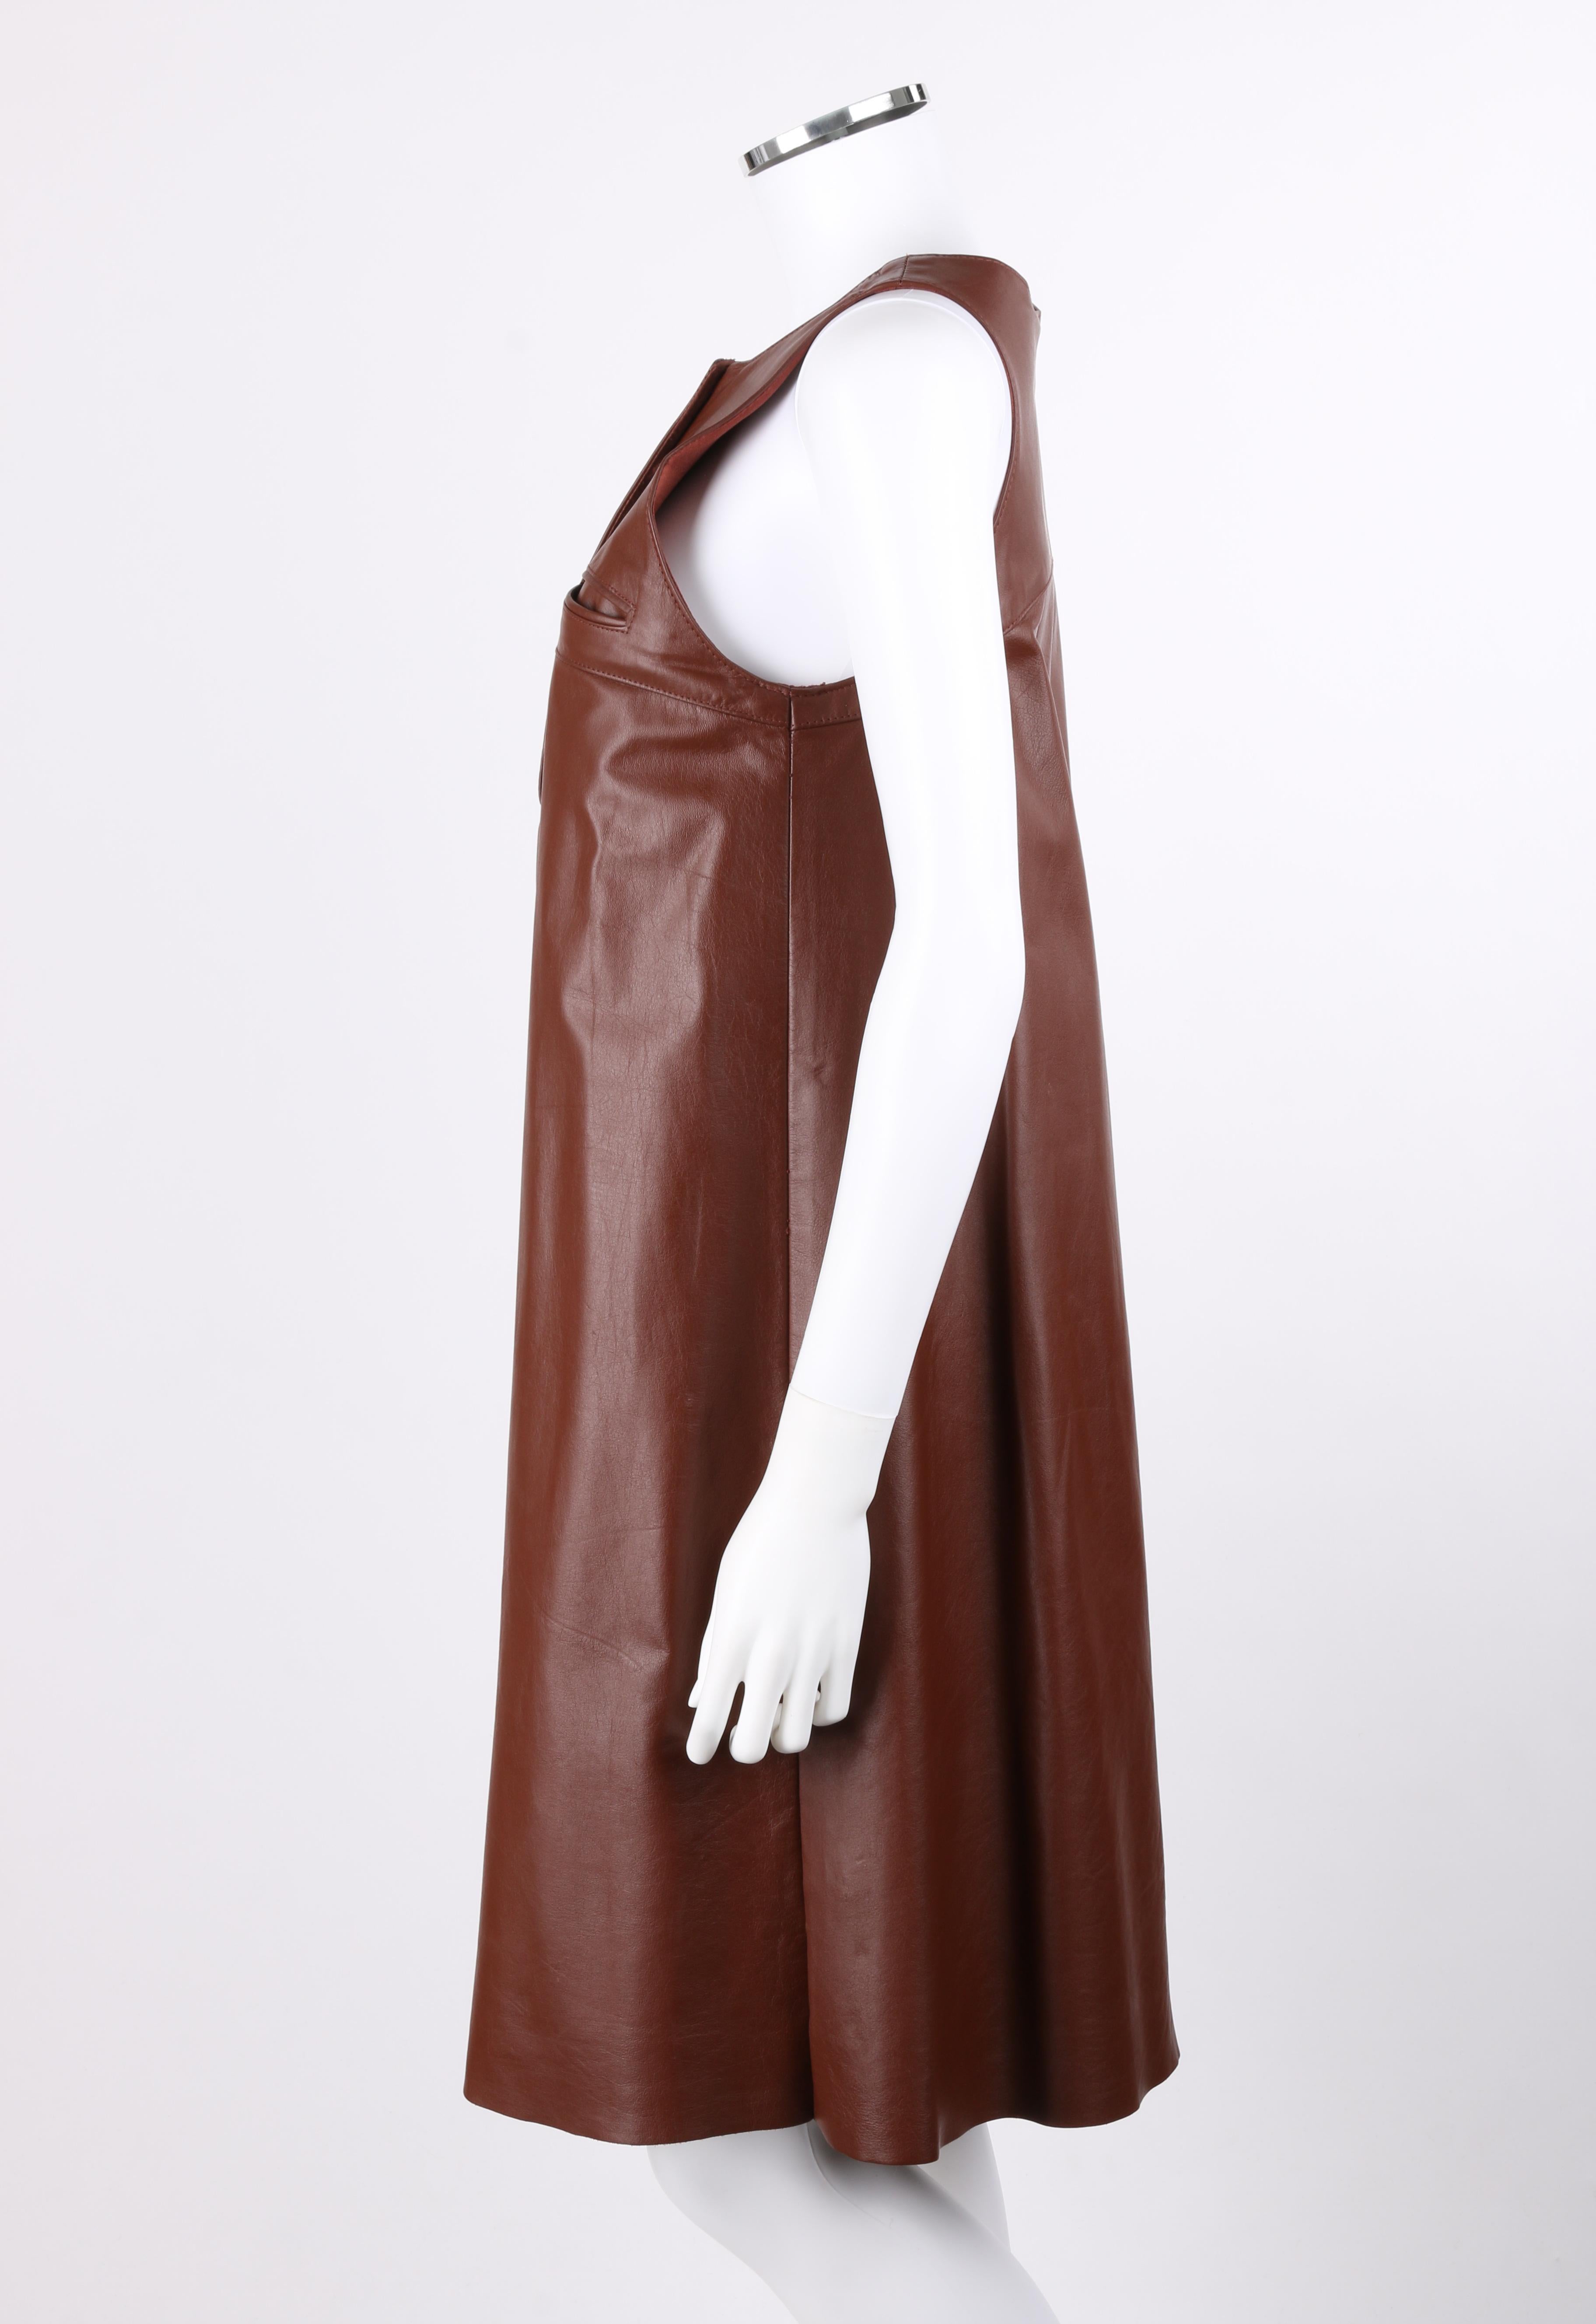 ANNE KLEIN c.1970's 3 Piece Paisley Blouse Leather Jumper Dress Set w/ Sash 4